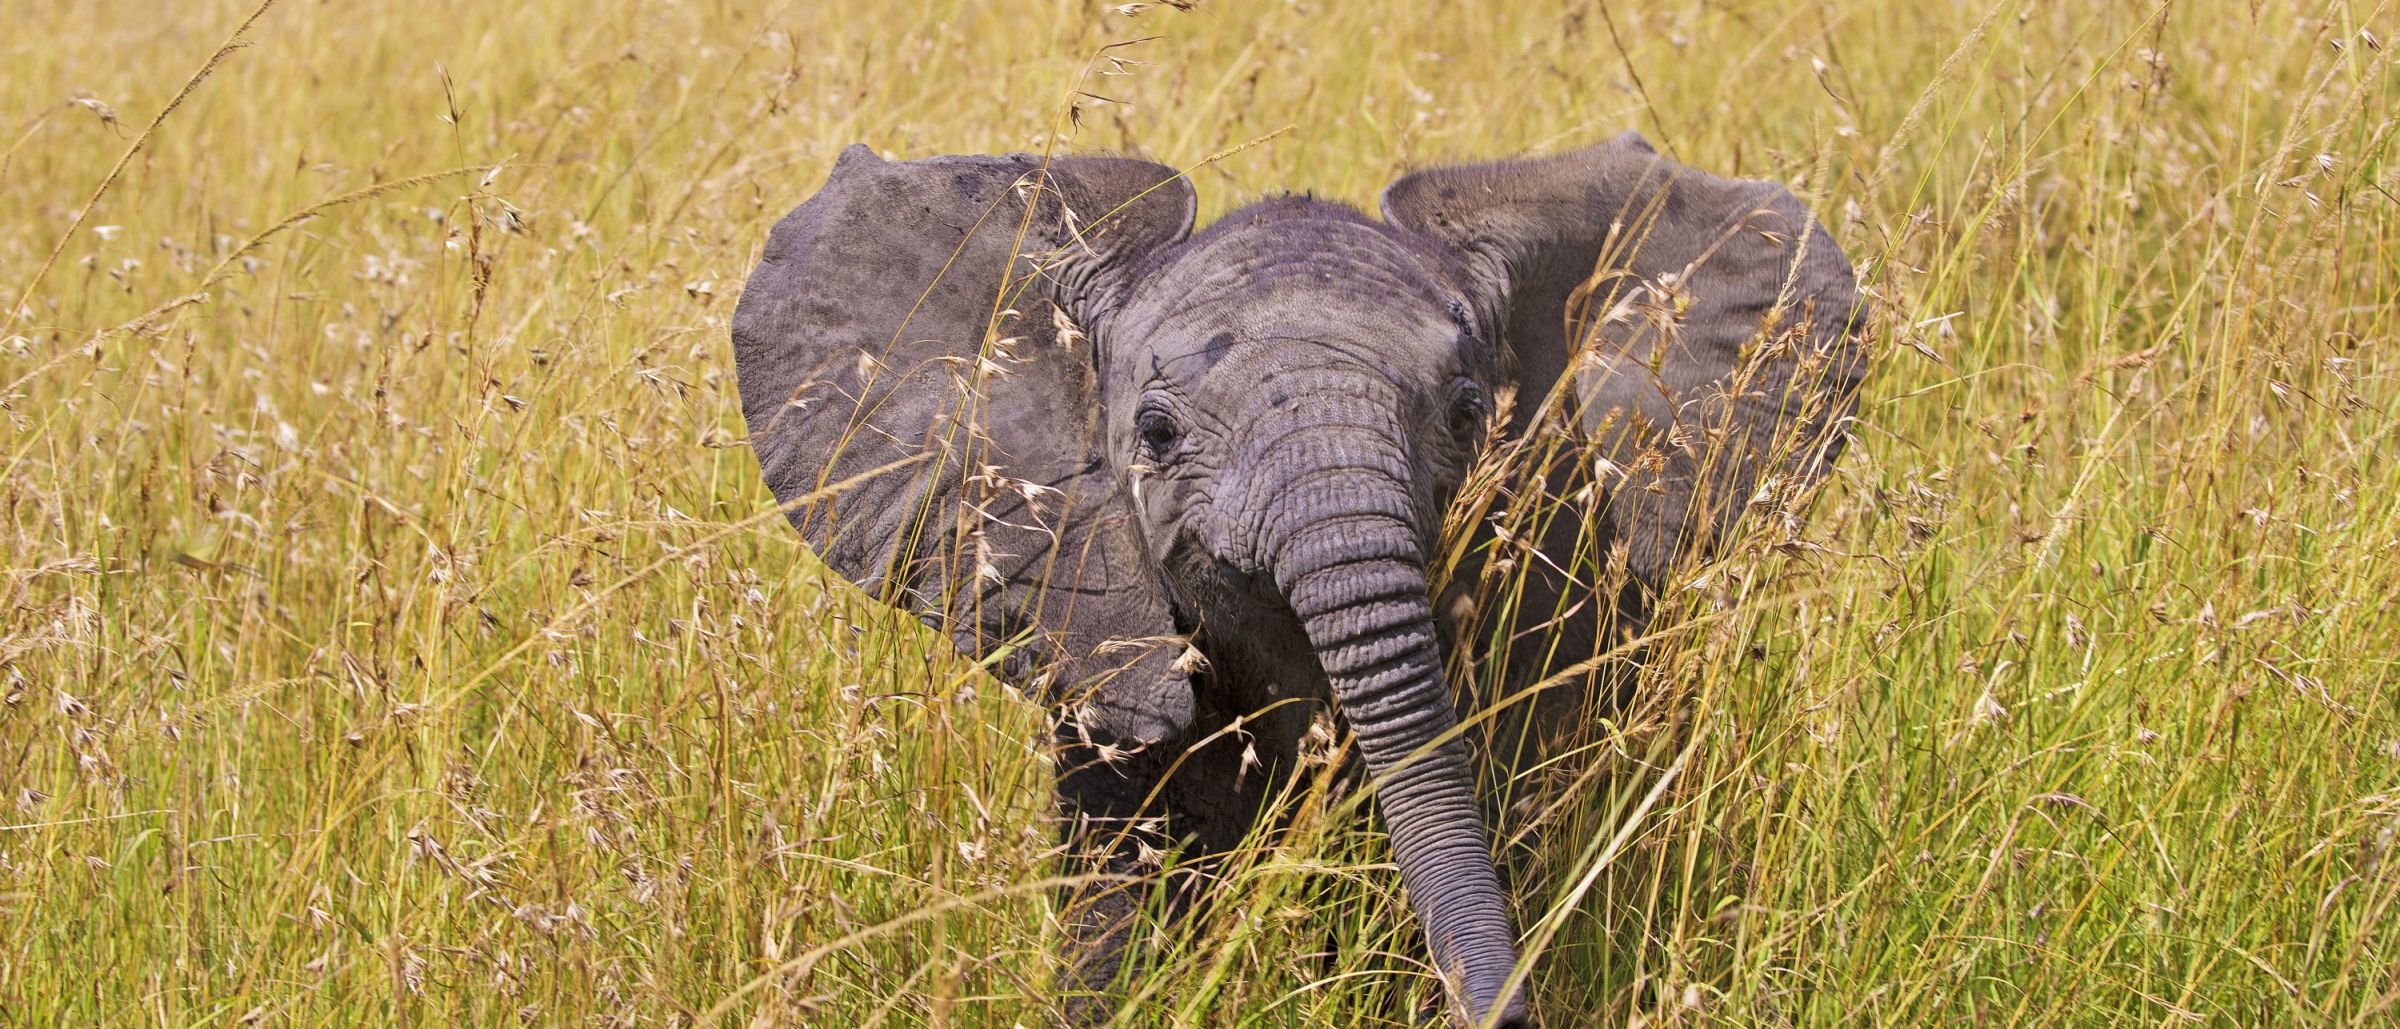 Junge Elefanten sind immer neugierig